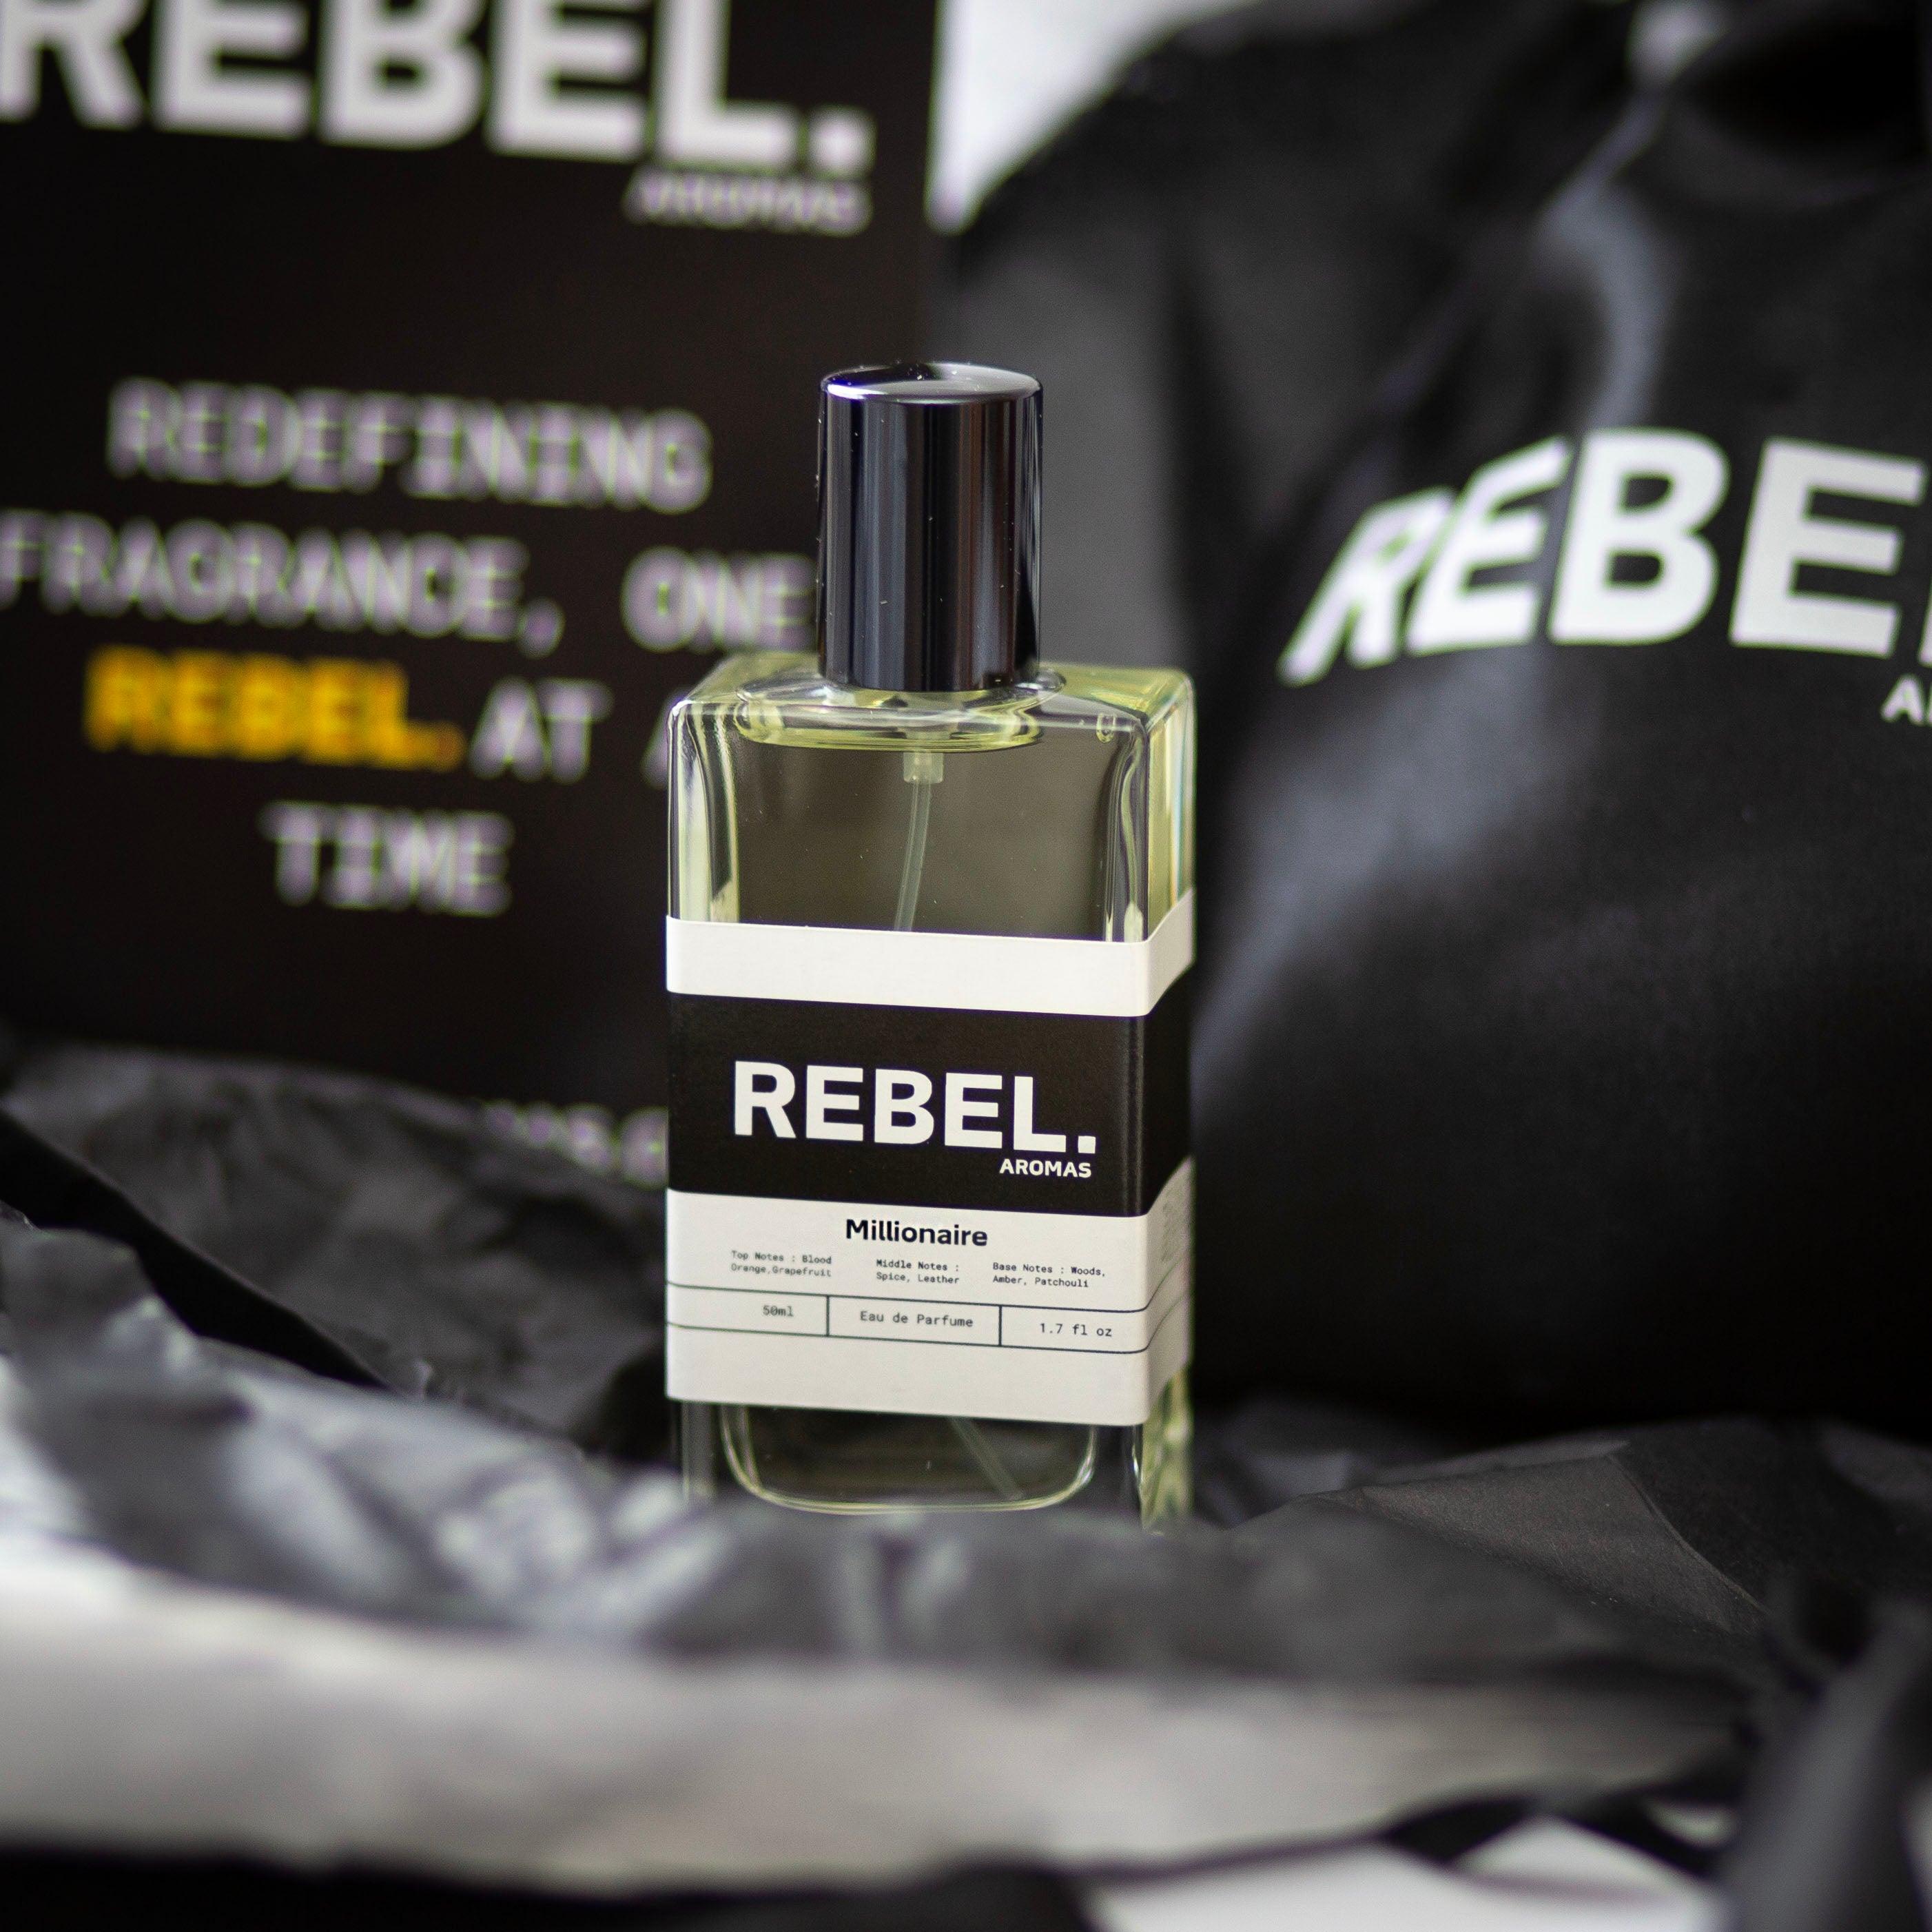 3x Best Sellers 50ml Aftershave Bundle - Rebel Aromas